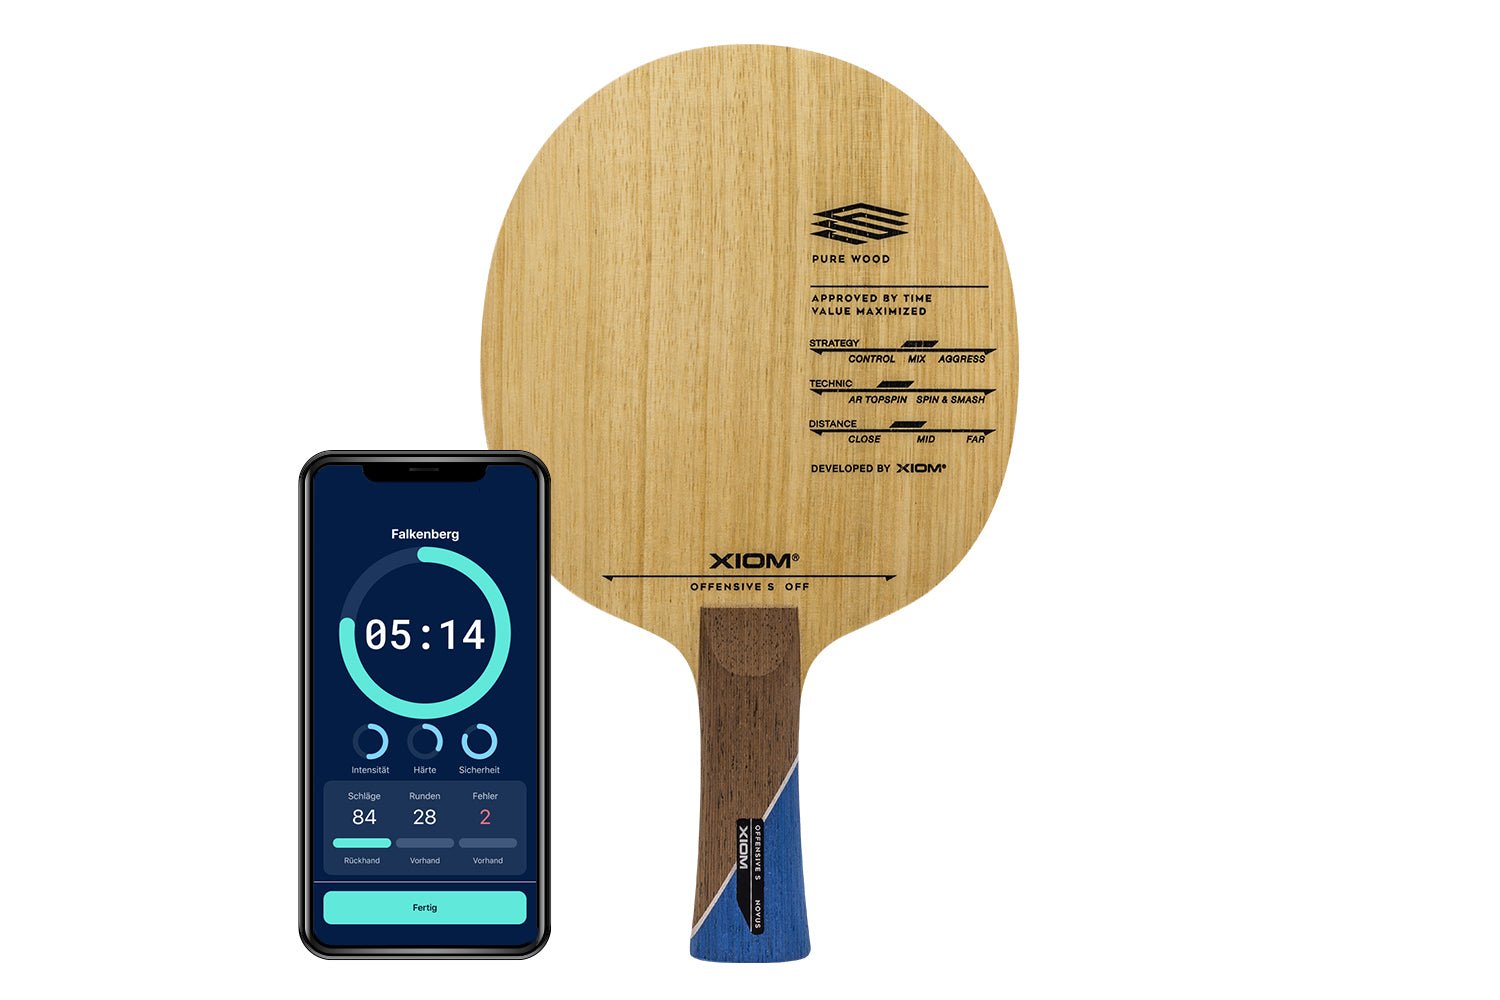 Xiom Offensive Off Tischtennisschläger mit konkaven Griff und Smartphone zeigt Daten des Schlägers vor weißem Hintergrund